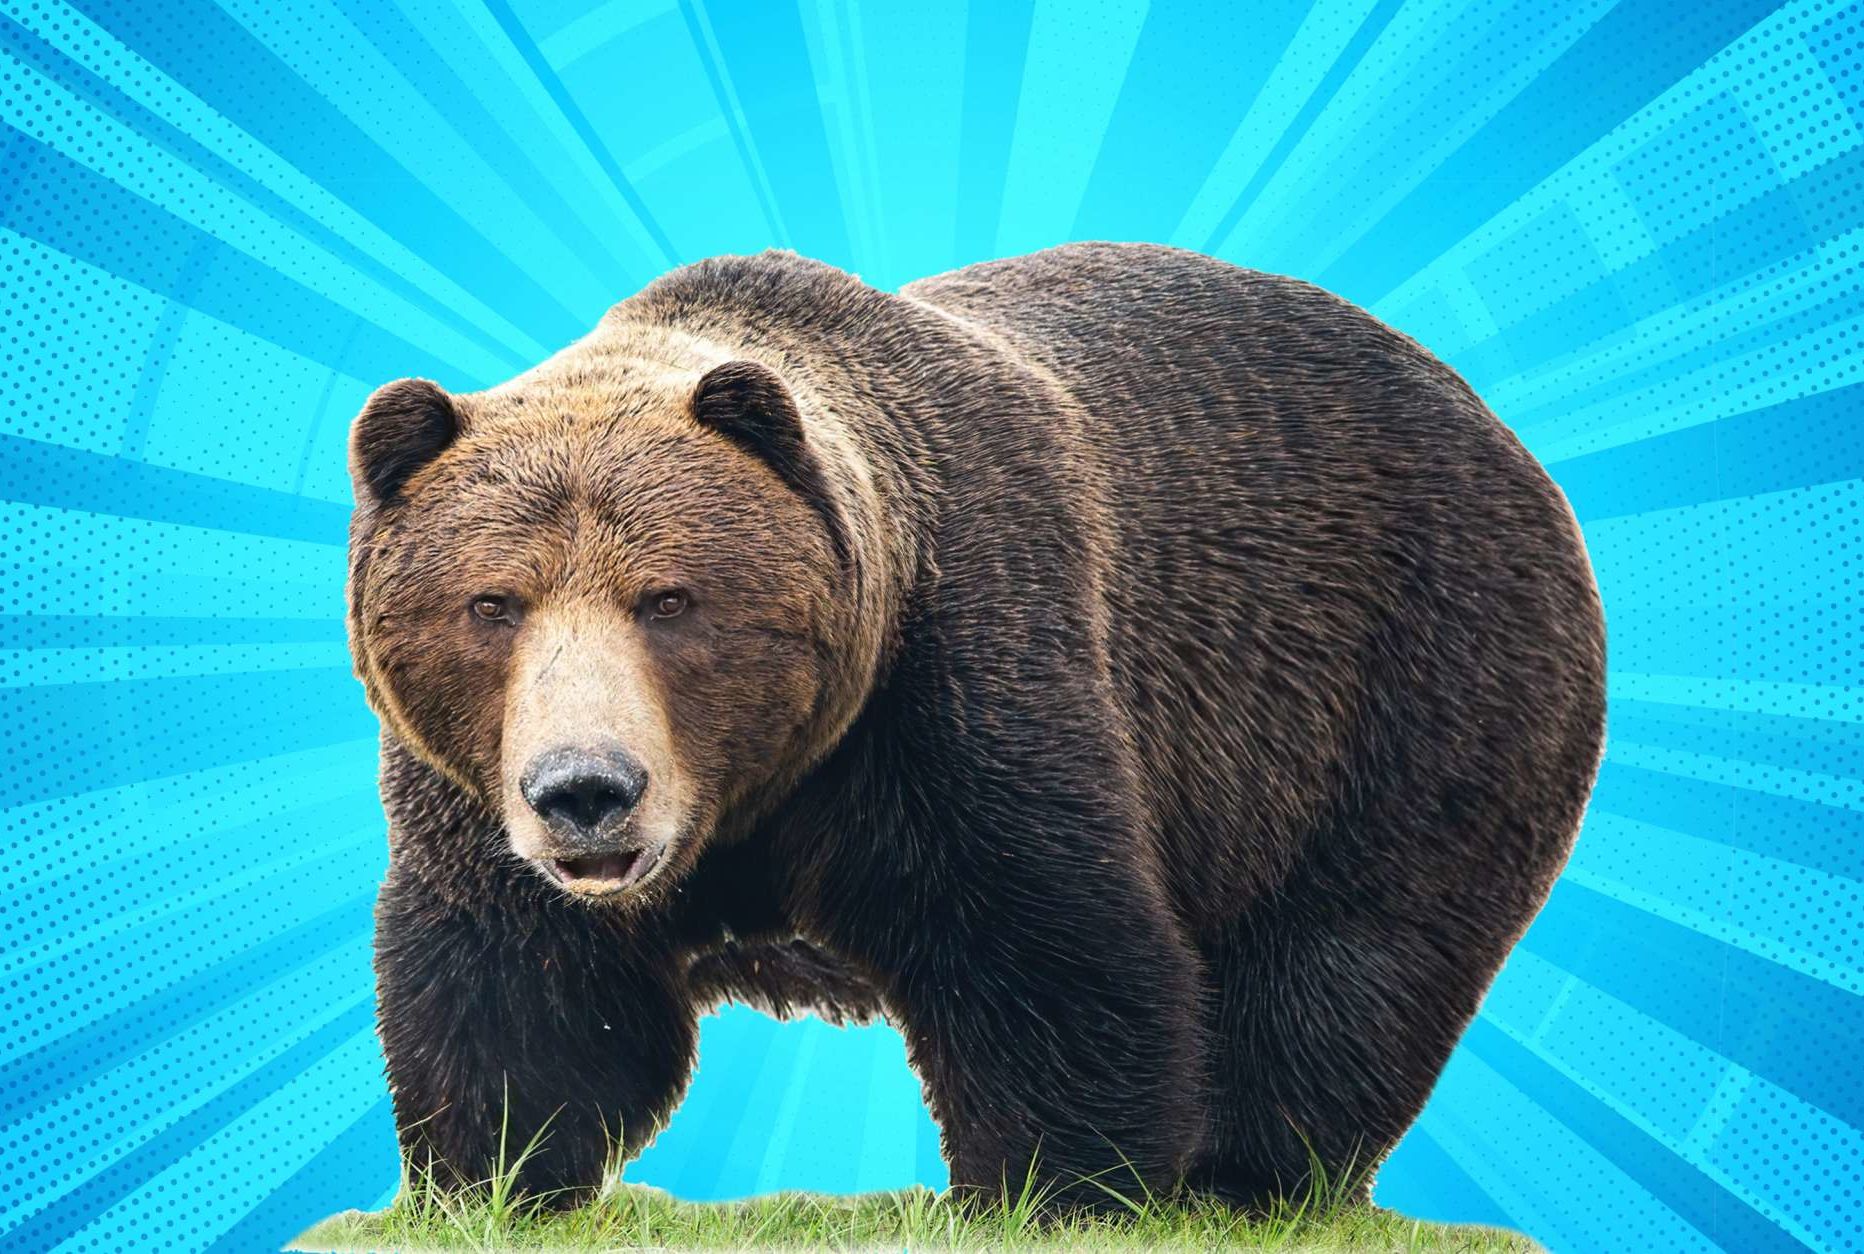 Fat Bear Week voting begins, in a race to find the chonkiest bear : NPR